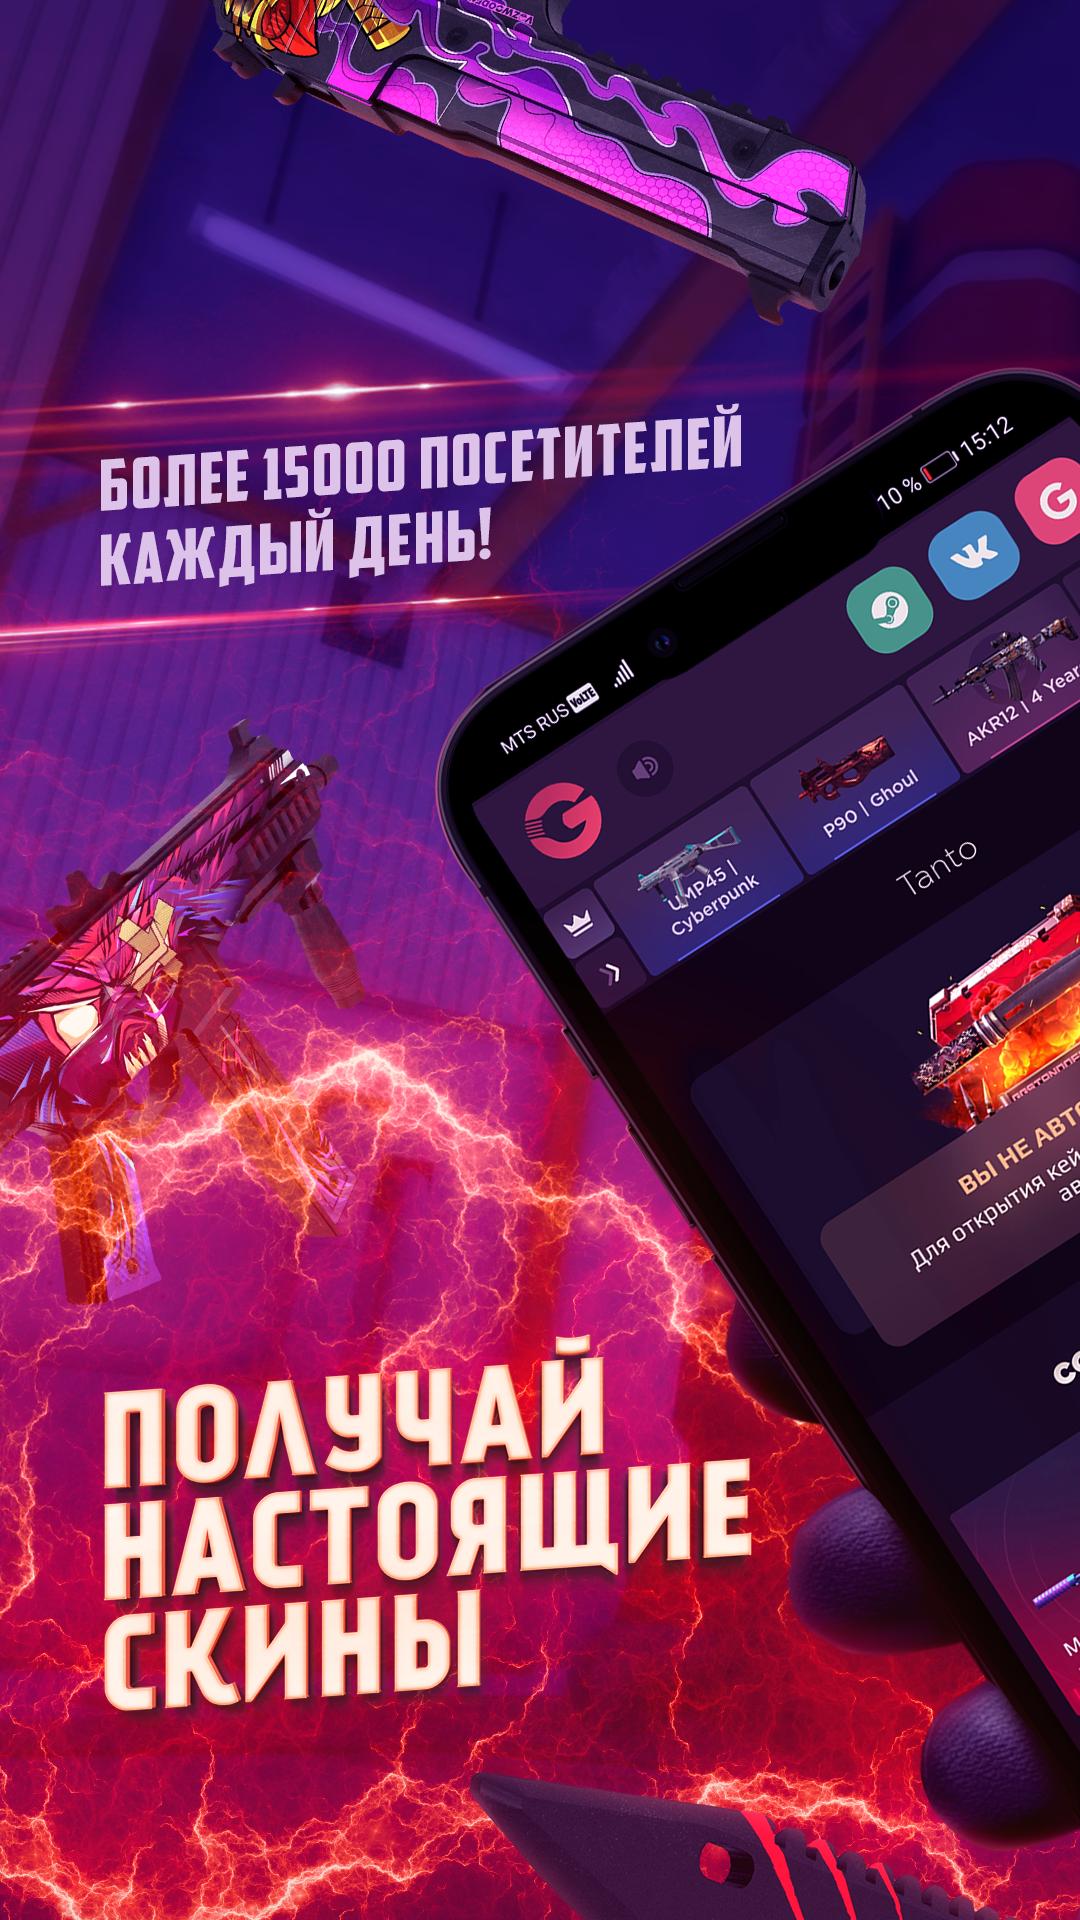 SkinApe for robux APK (Android App) - Baixar Grátis